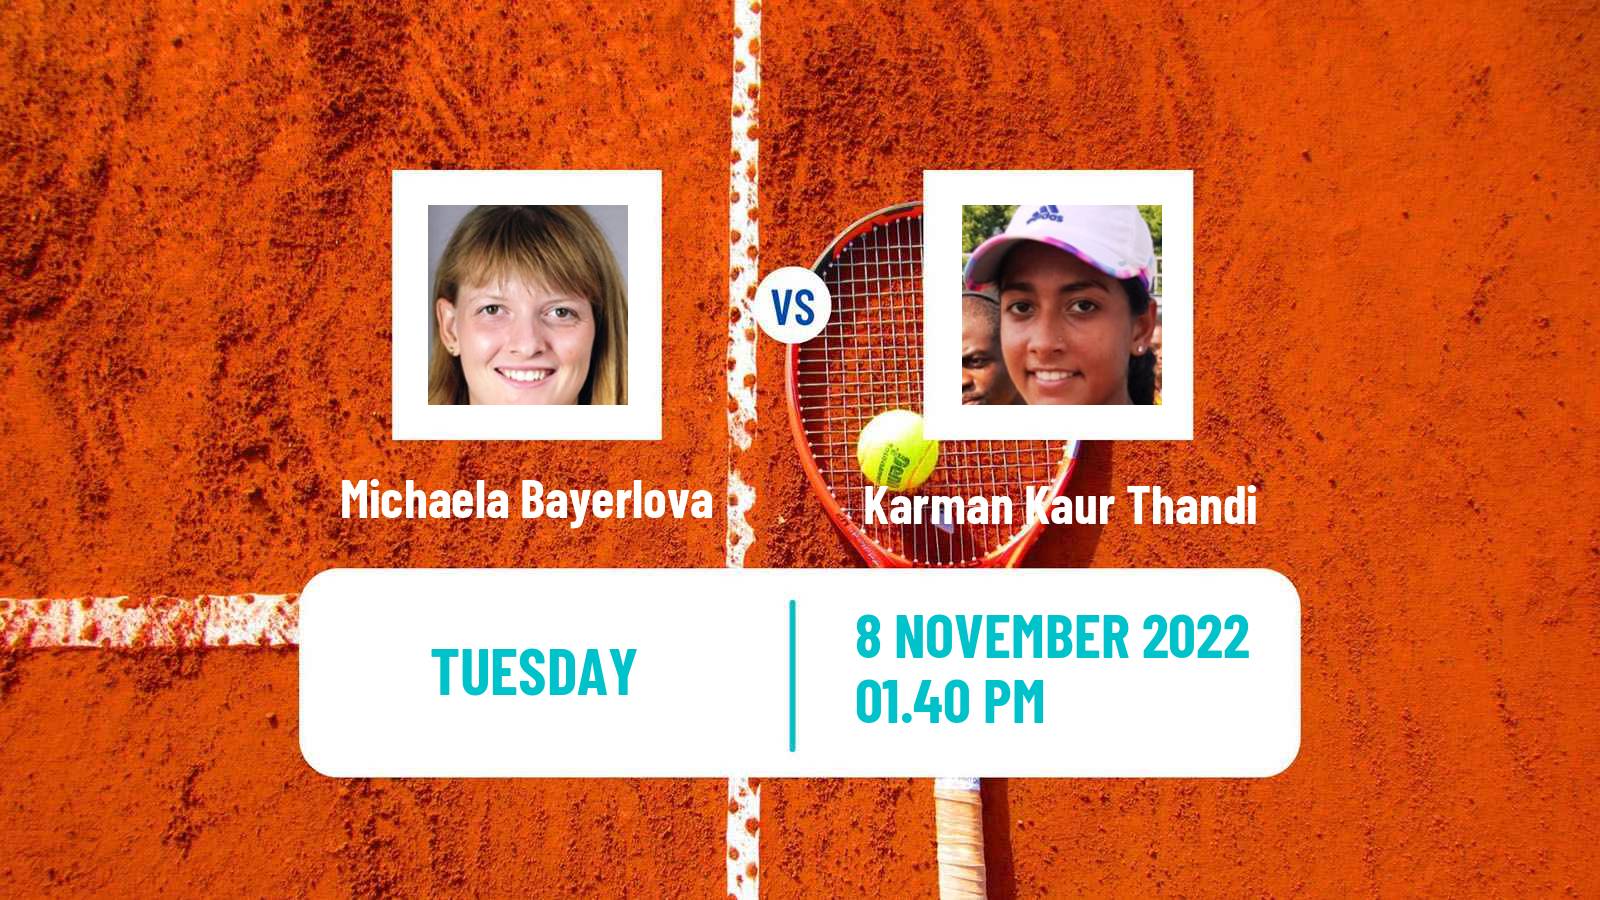 Tennis ITF Tournaments Michaela Bayerlova - Karman Kaur Thandi